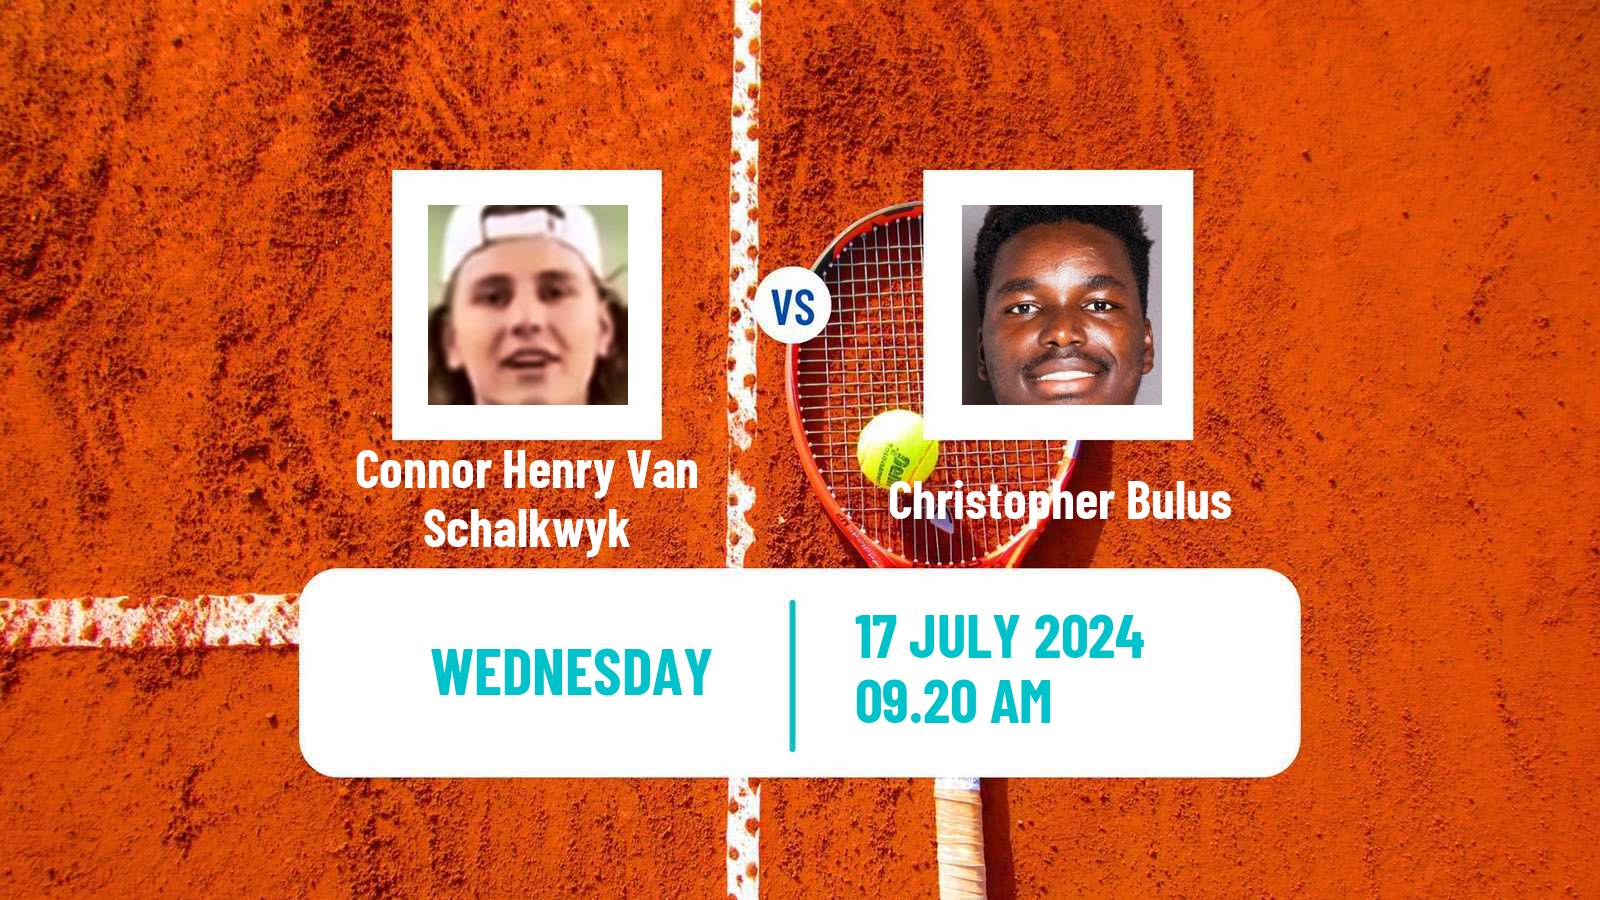 Tennis Davis Cup Group III Connor Henry Van Schalkwyk - Christopher Bulus